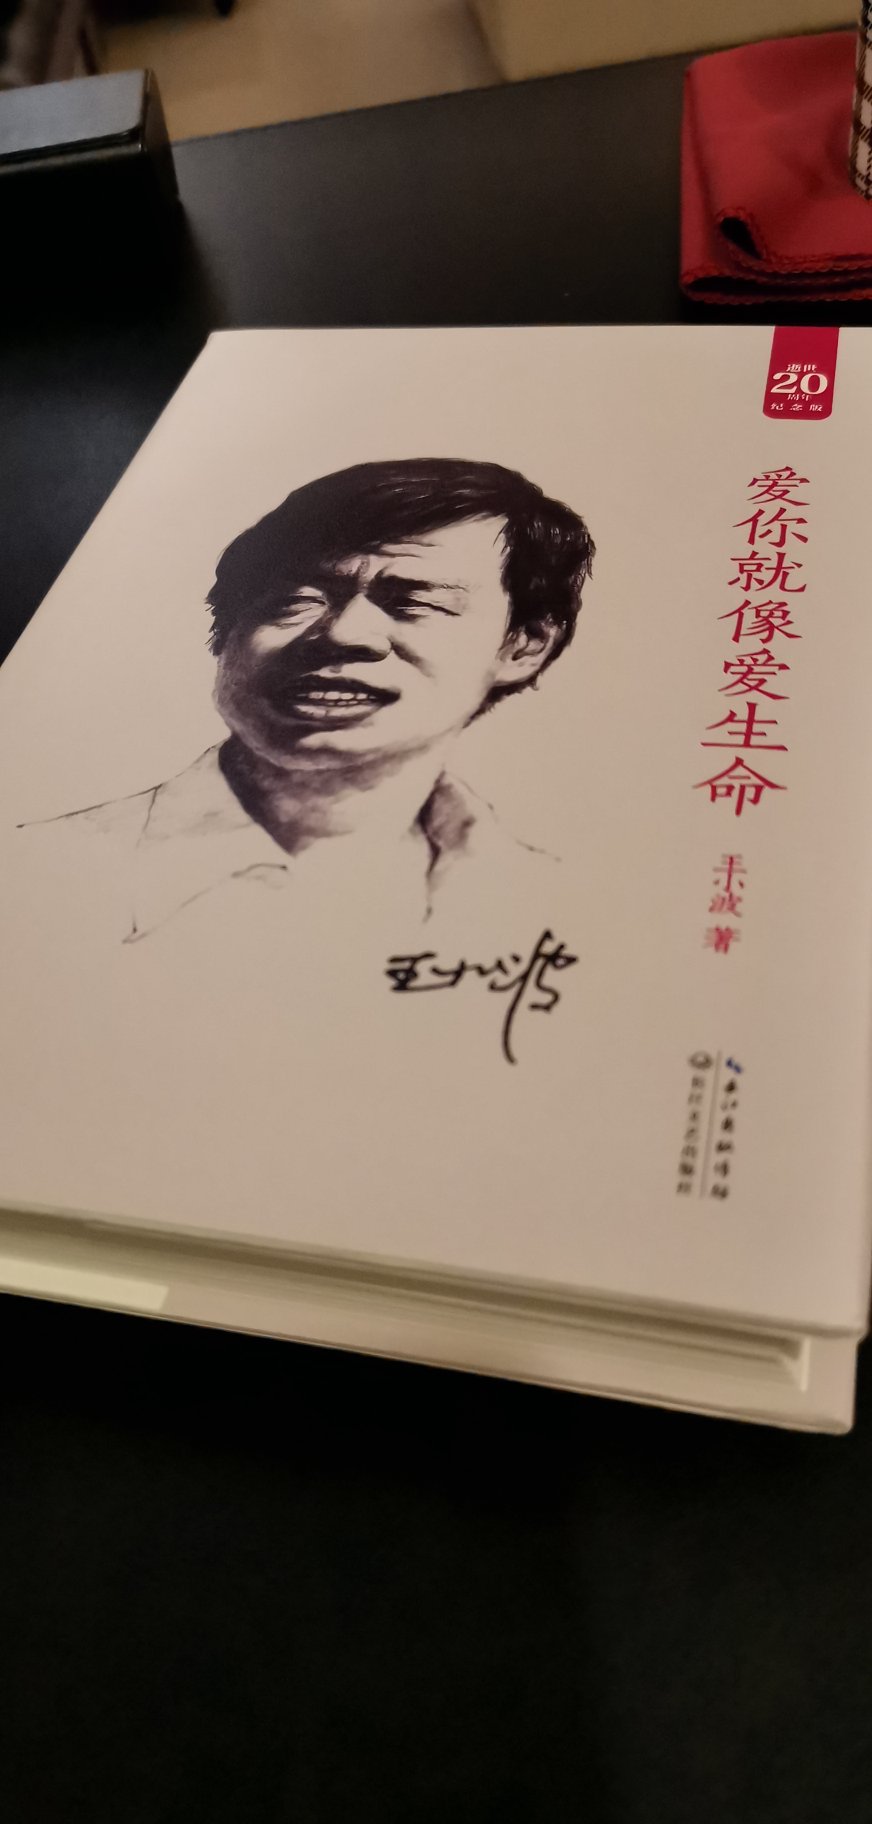 装帧很精美，纸质非常满意！王小波一个非常有思想的文学作家，有幸拜读，仔细品味！